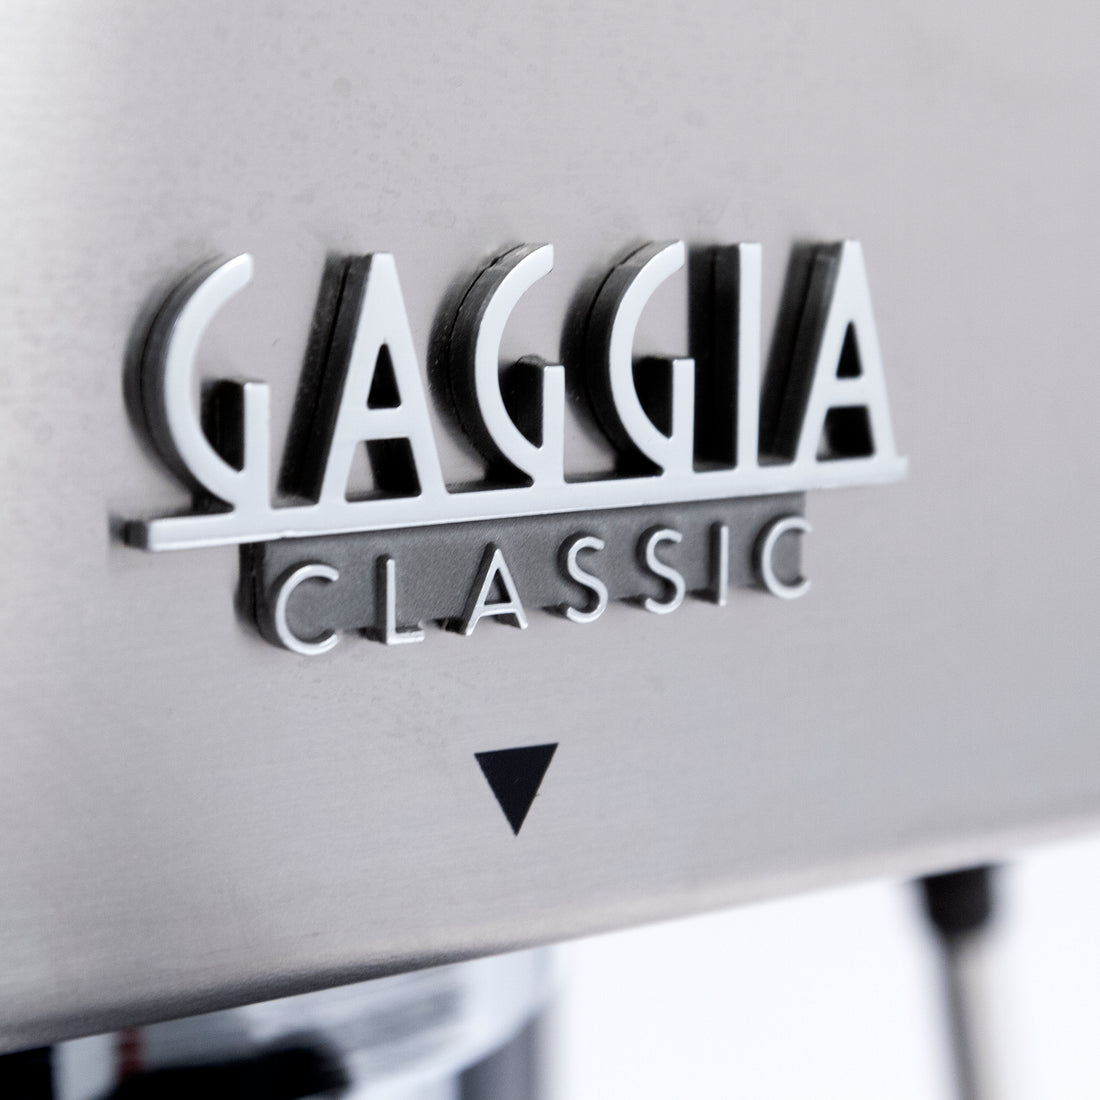 Refurbished Gaggia Classic Pro Semi-Automatic Espresso Machine